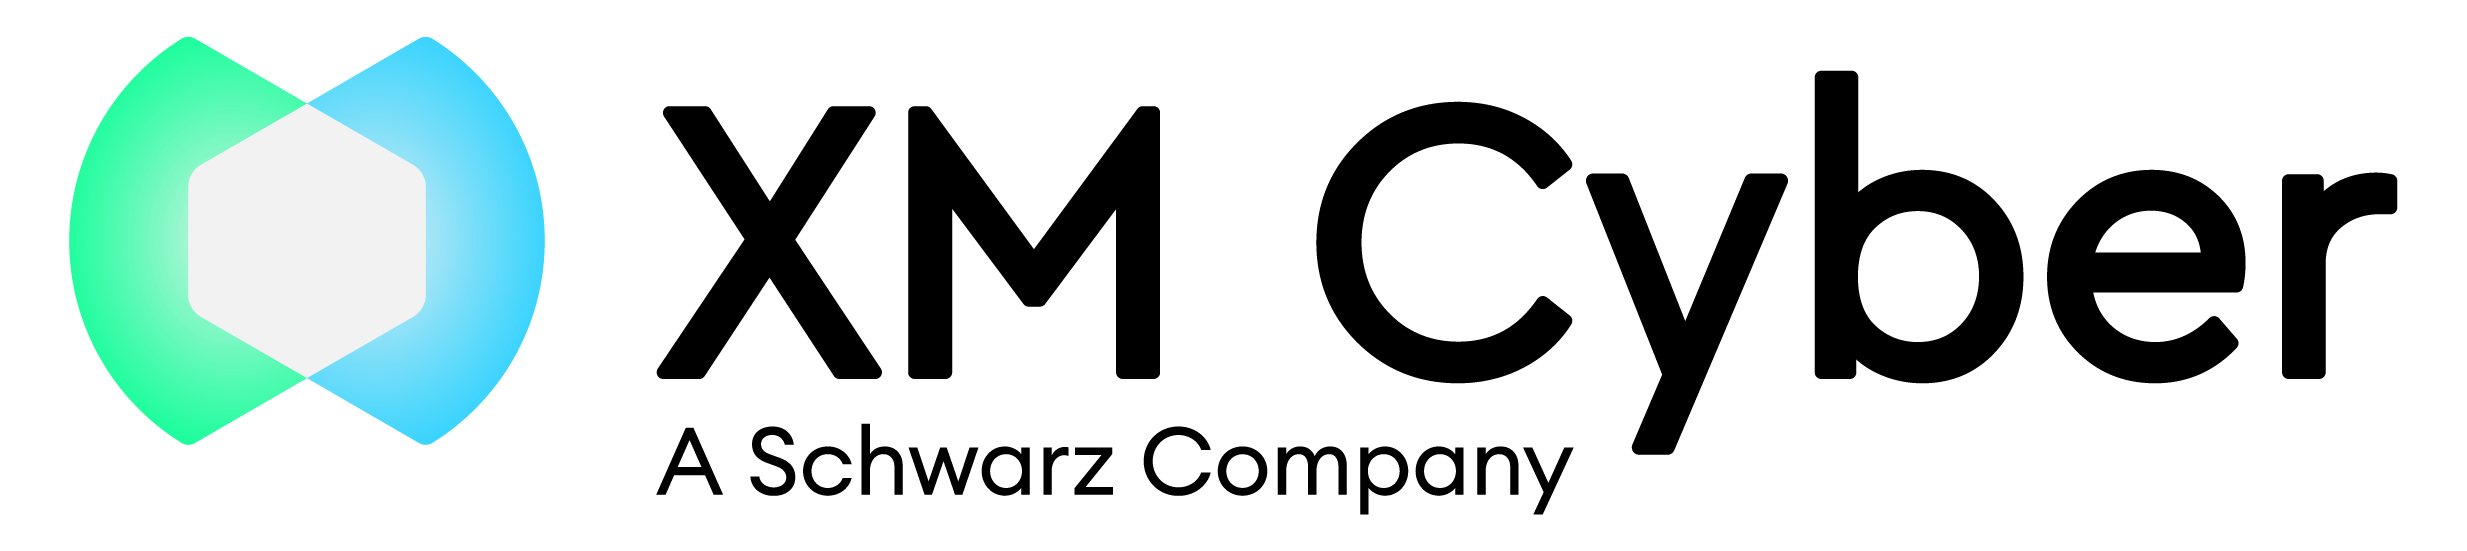 XM Cyber Schwarz Group